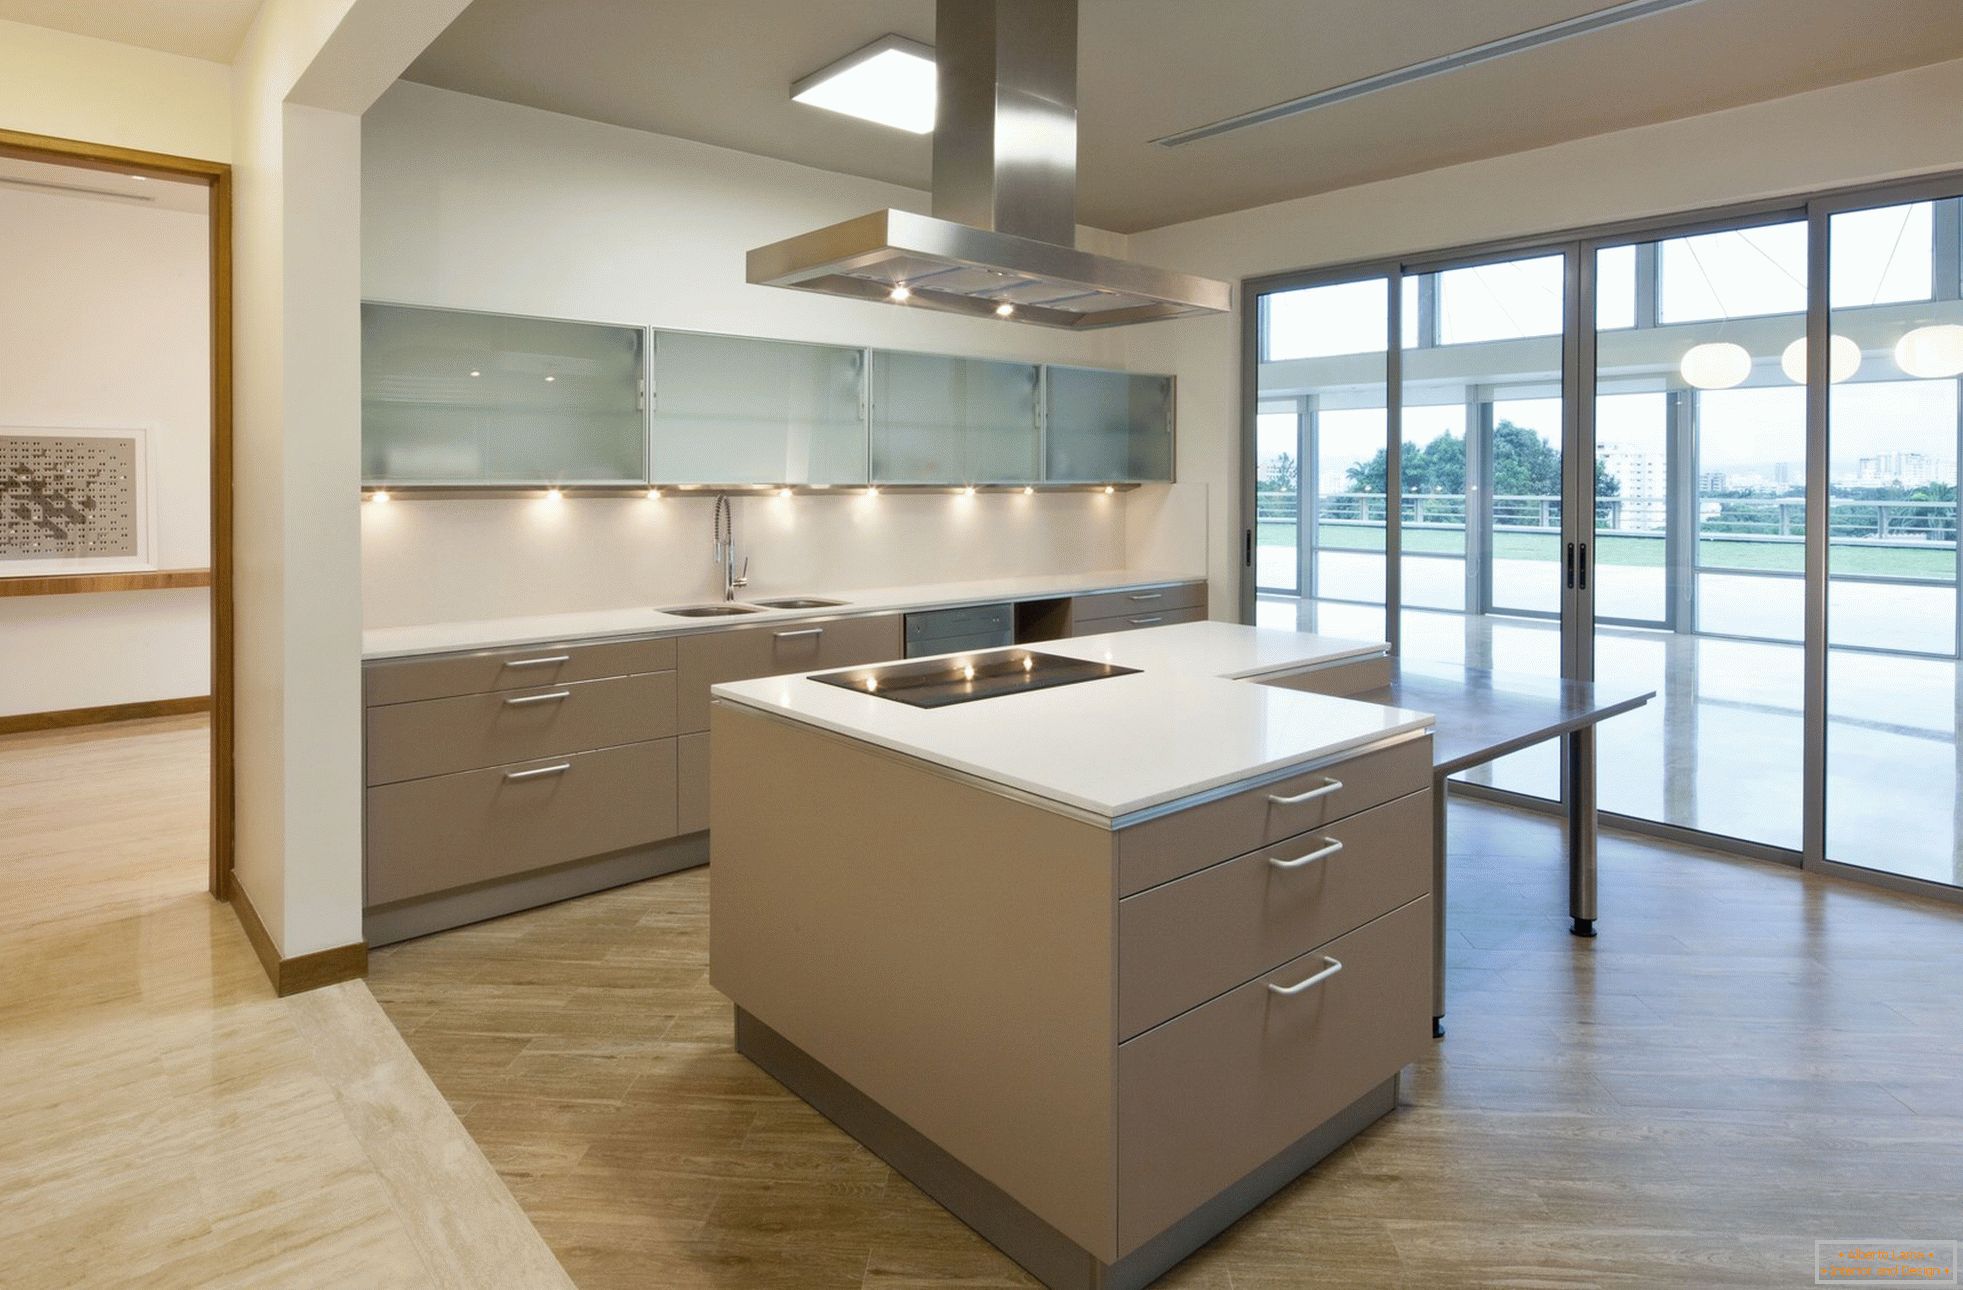 Kuchyně s panoramatickými okny